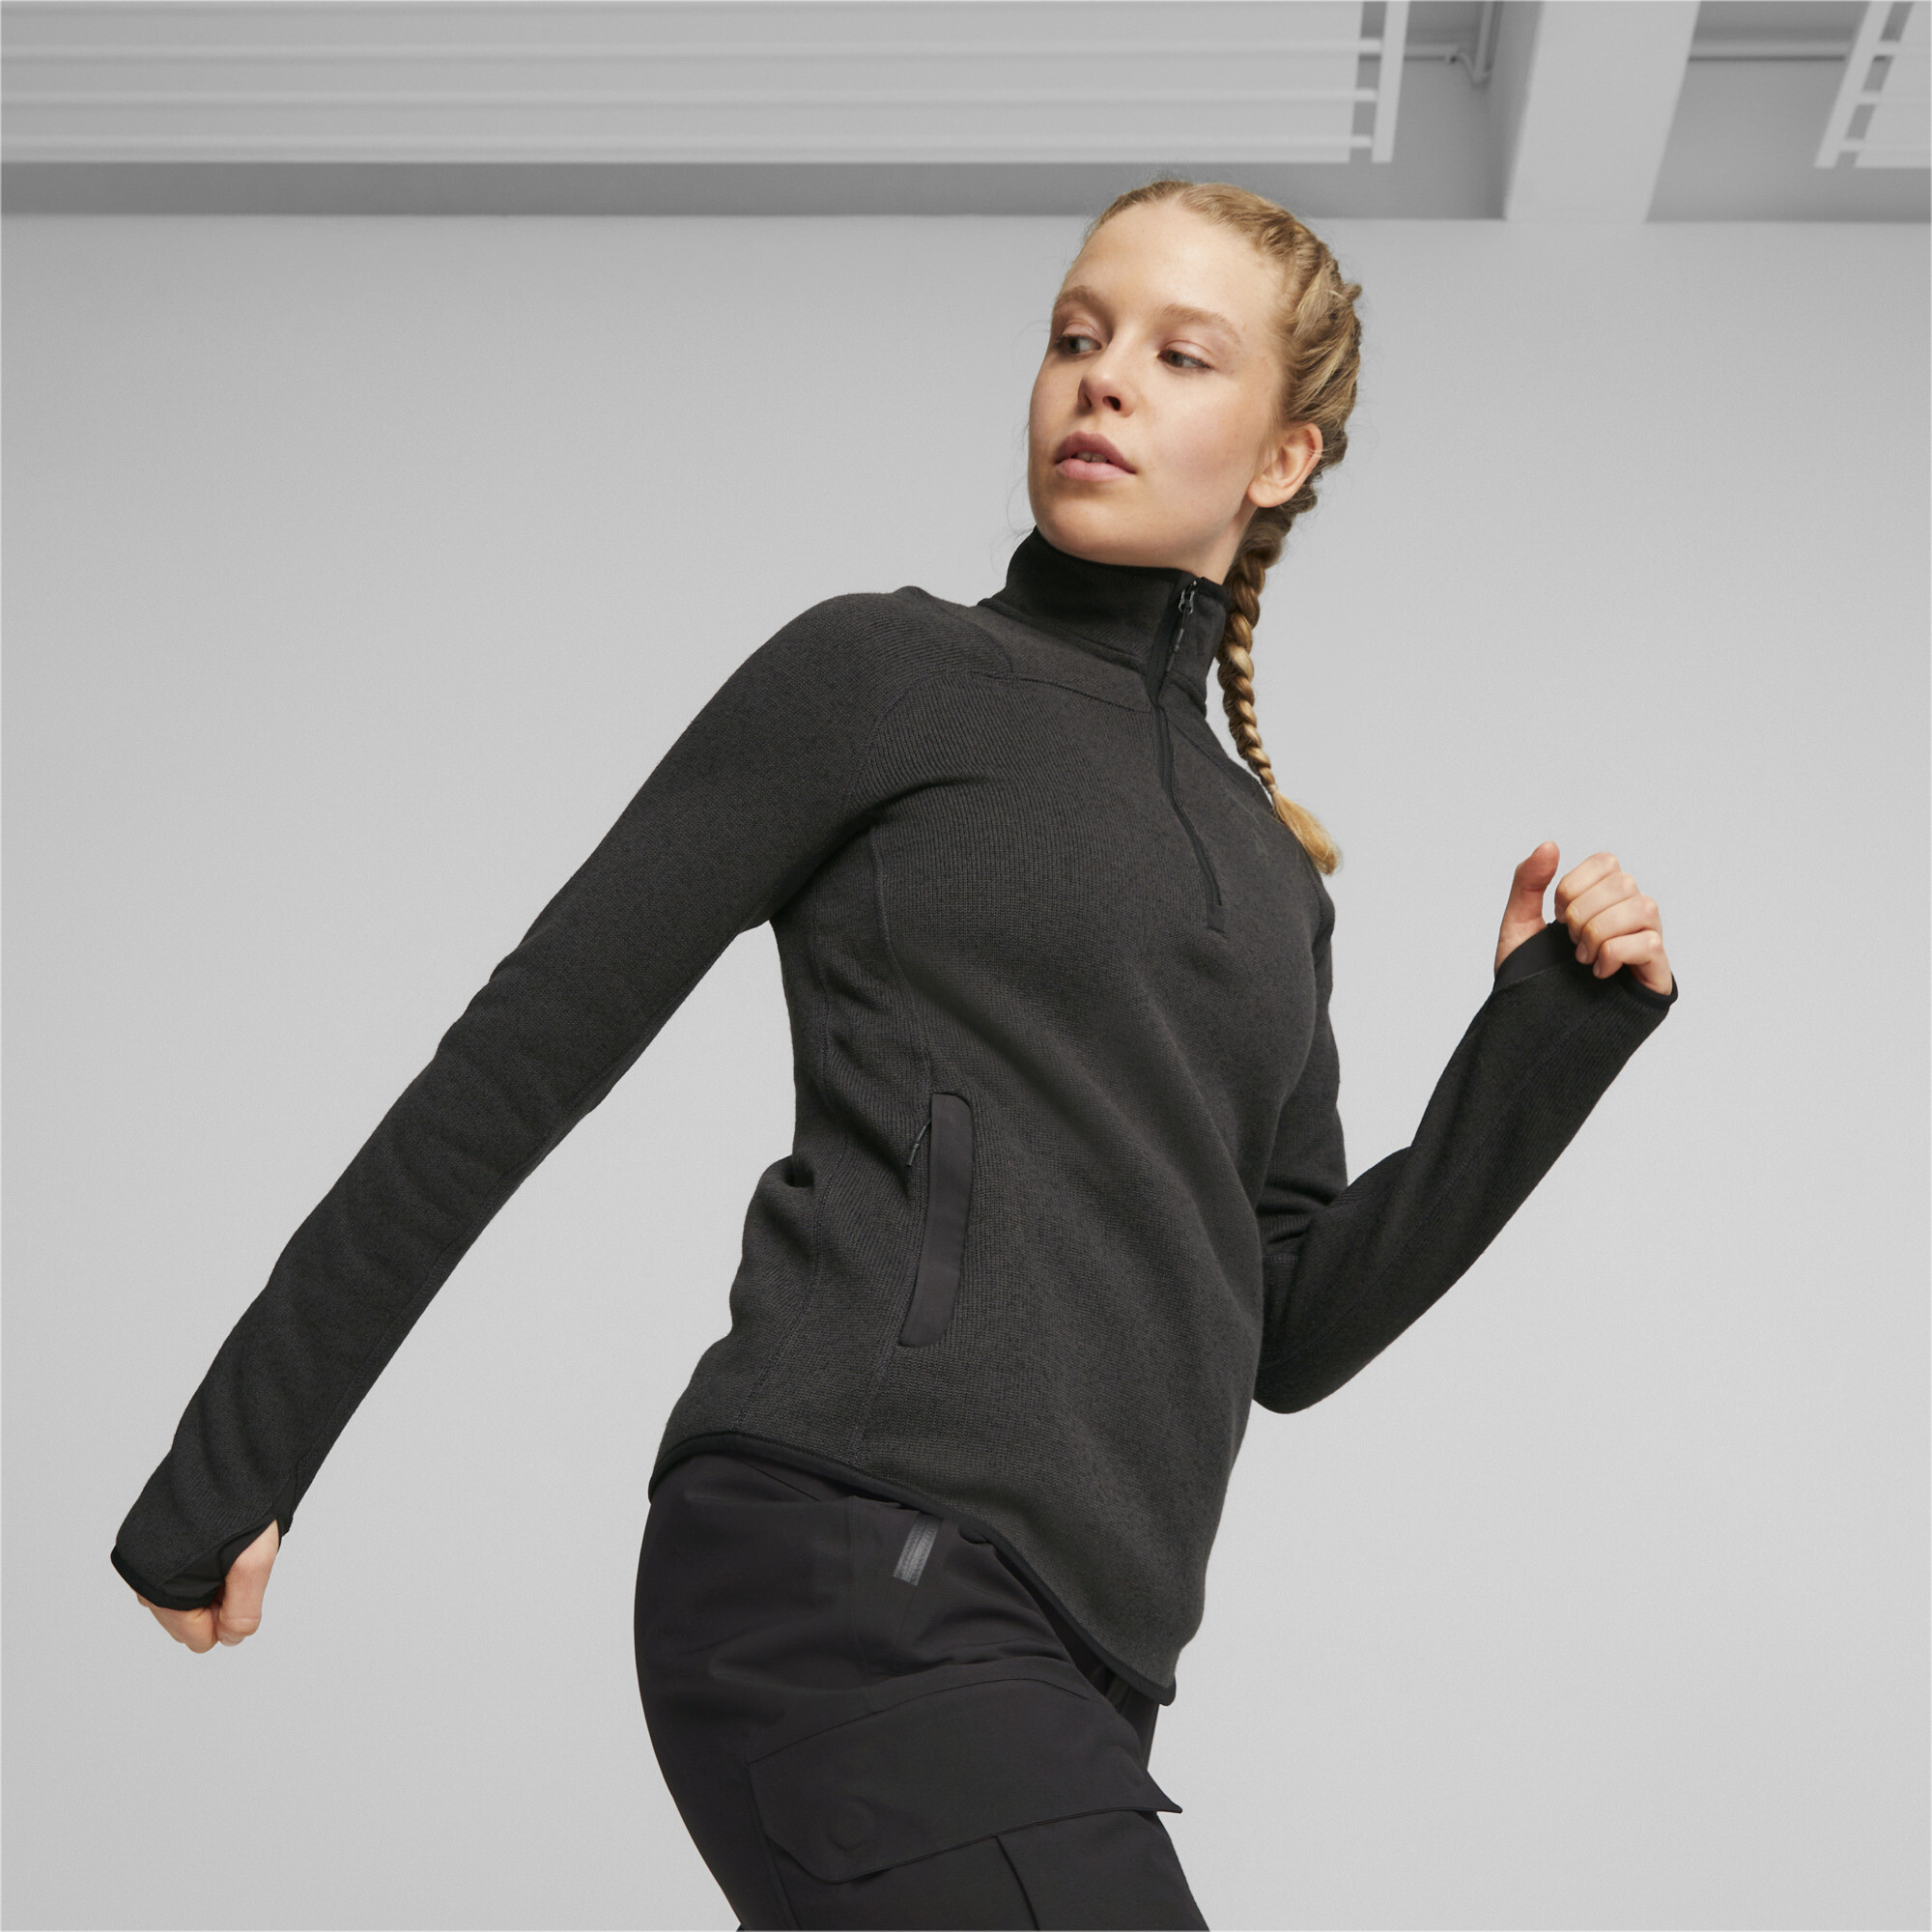 Women's PUMA SEASONS Running Fleece In Heather, Size XS